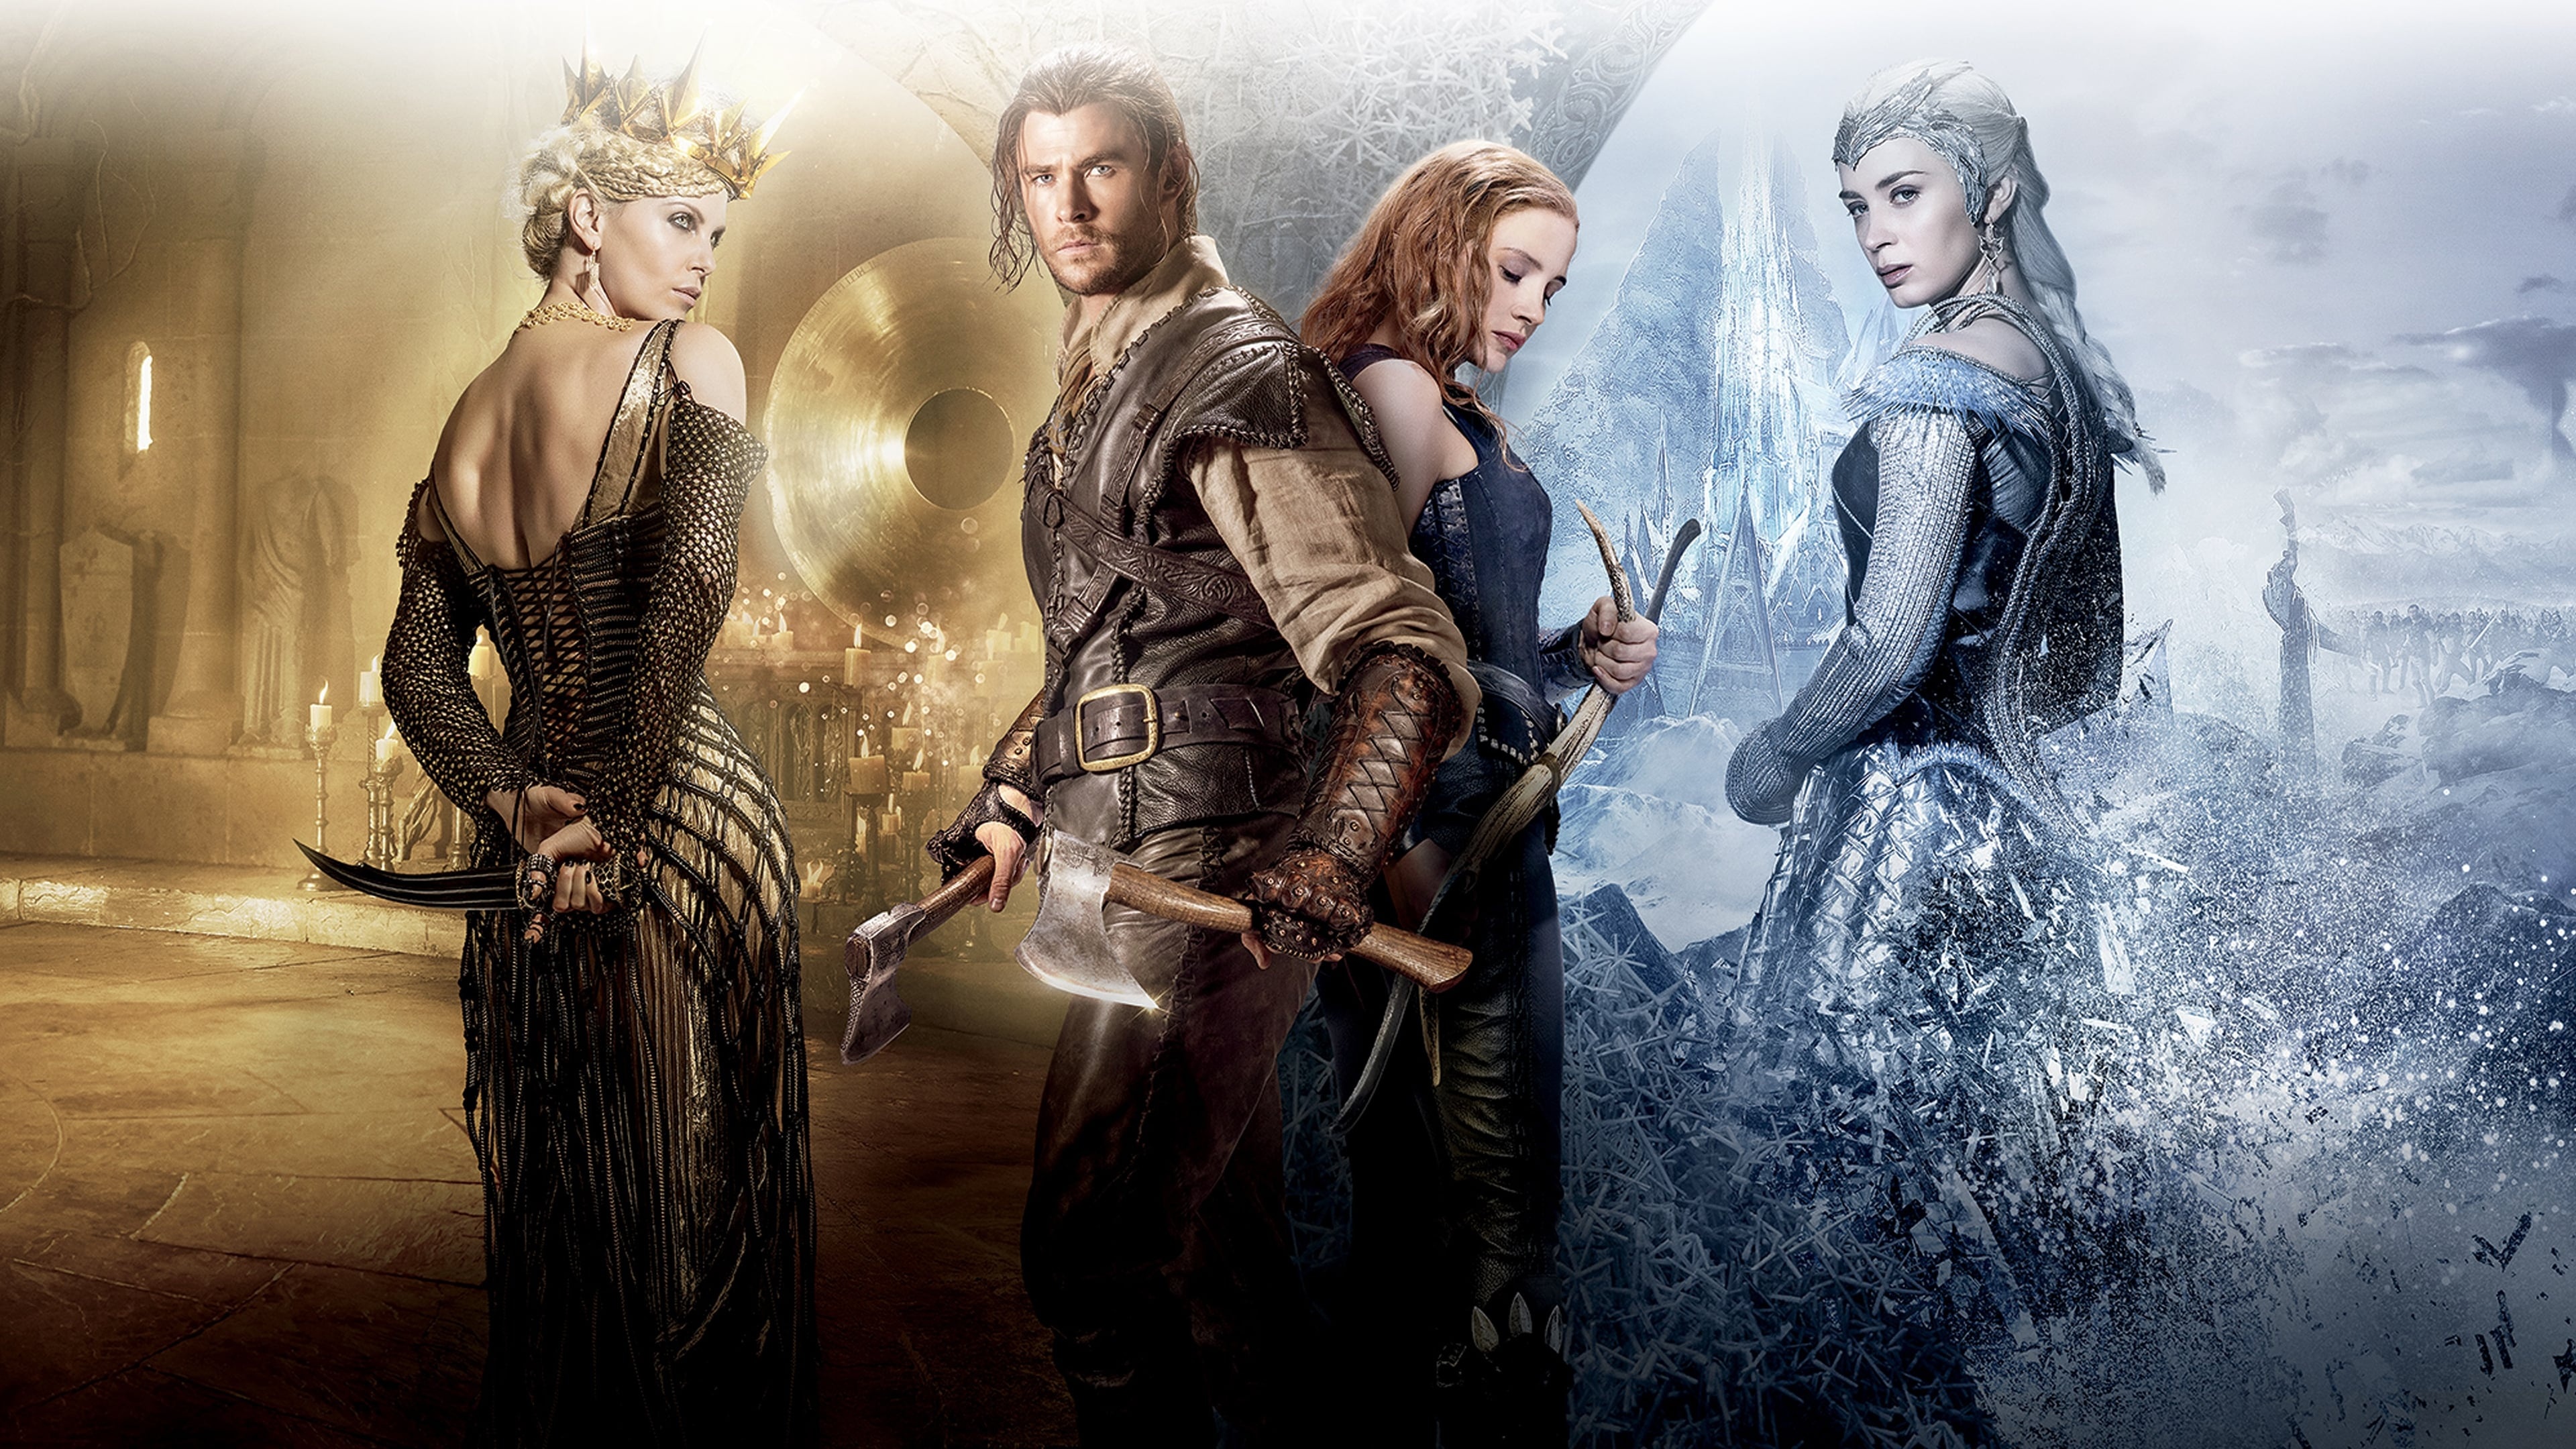 Emily Blunt, Queen Freya, The Huntsman sequel, Watch for free, 3840x2160 4K Desktop